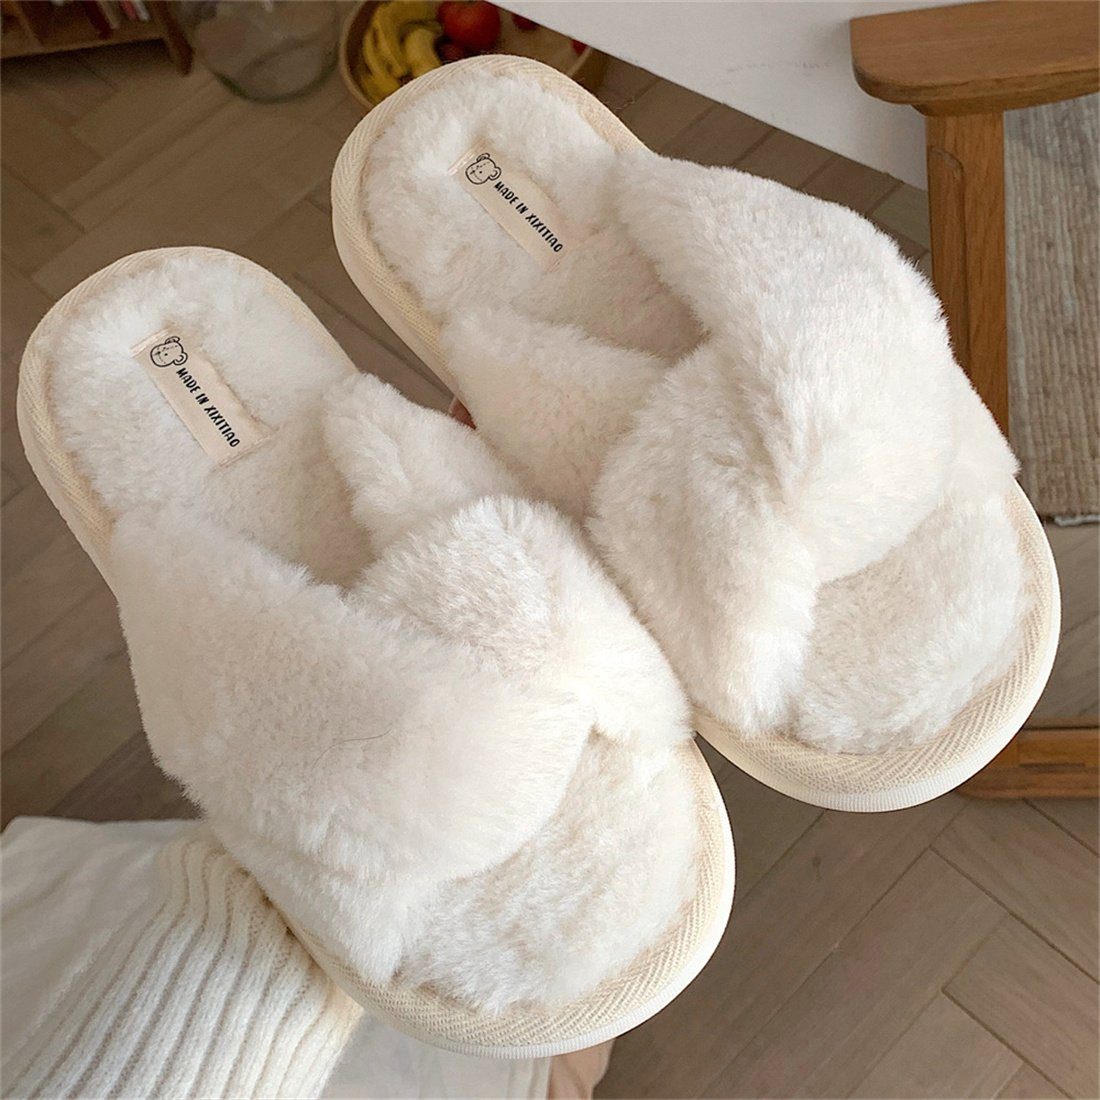 DÖRÖY Frauen Crossover Hausschuhe, Weiß Plüsch Baumwolle warme einfarbig Schuhe Hausschuhe Plüsch